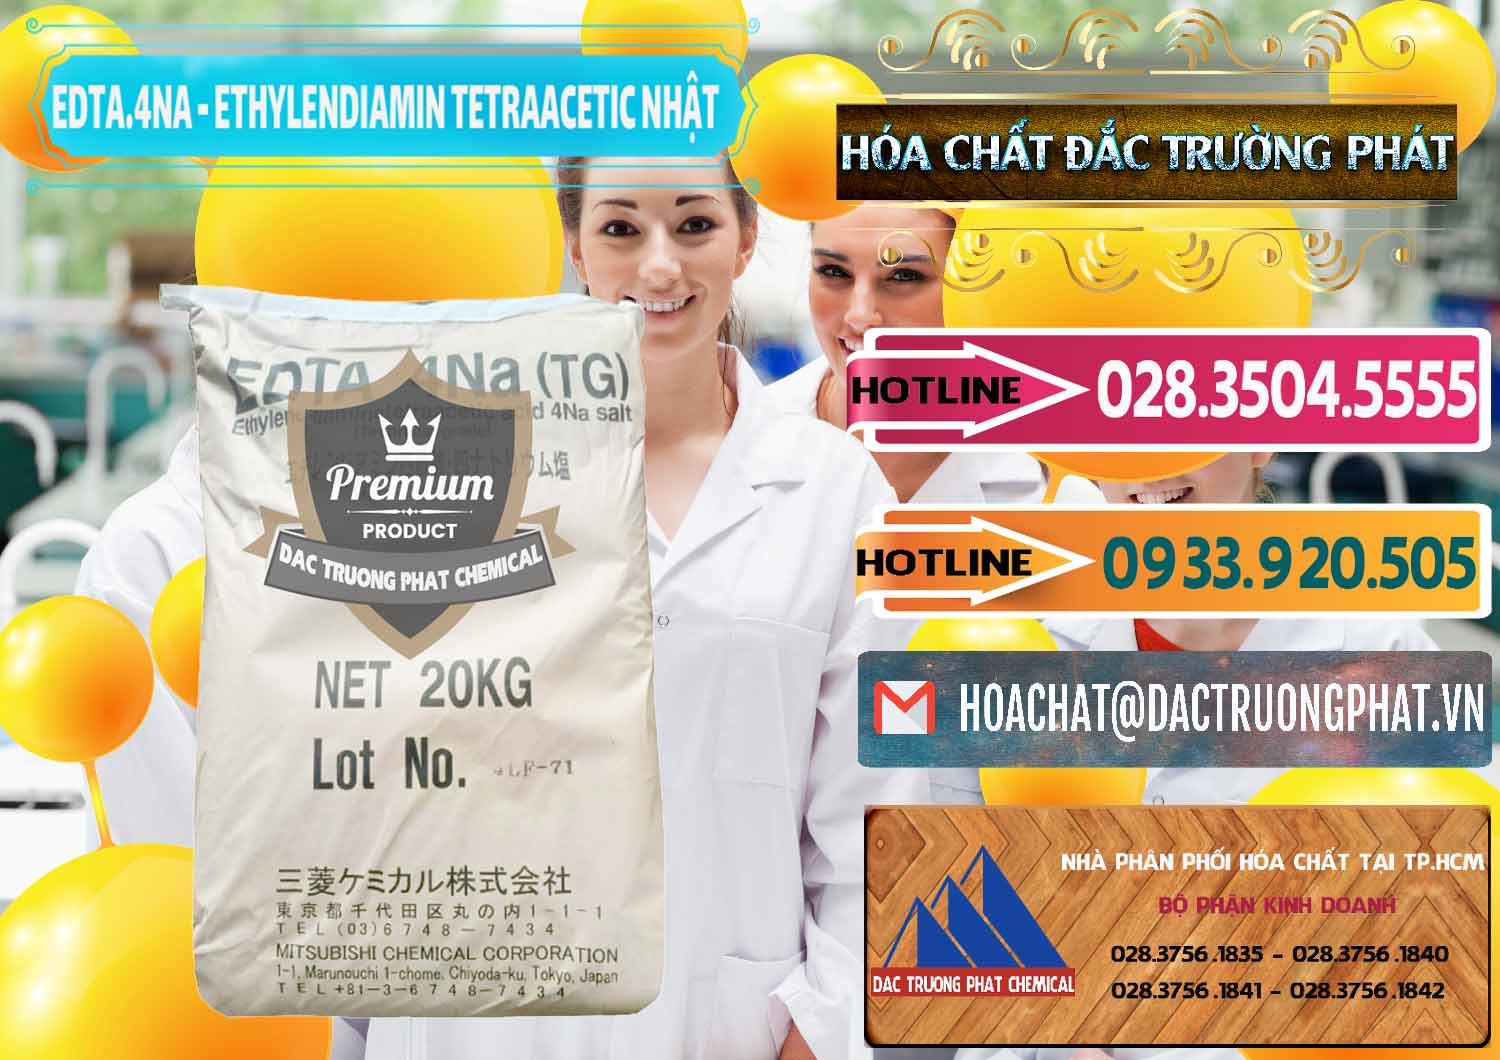 Cty chuyên kinh doanh & bán EDTA 4Na - Ethylendiamin Tetraacetic Nhật Bản Japan - 0482 - Cty nhập khẩu _ cung cấp hóa chất tại TP.HCM - dactruongphat.vn